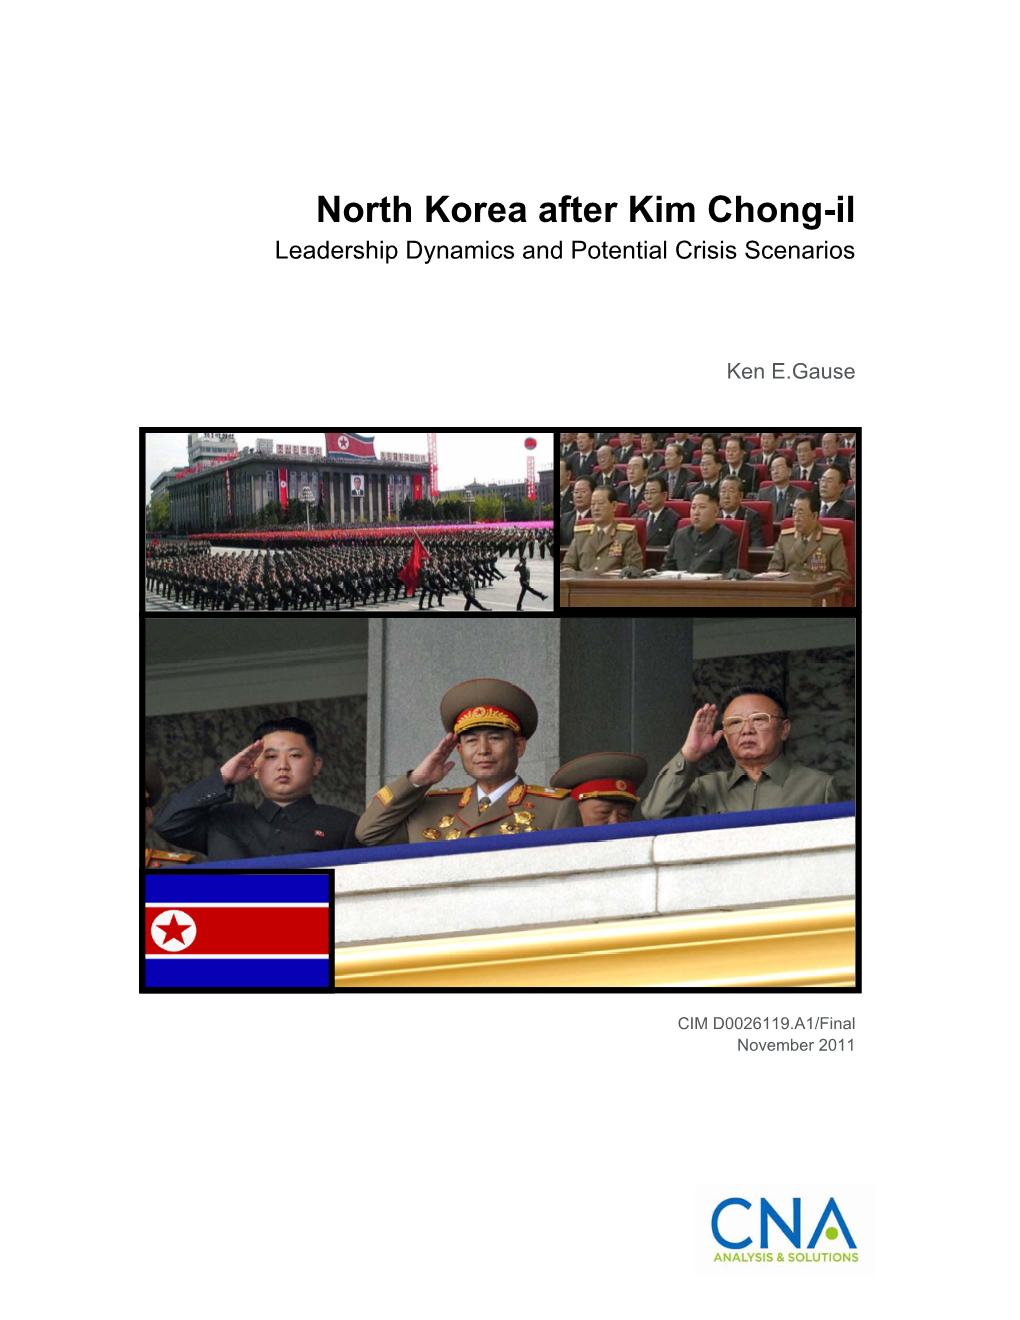 North Korea After Kim Chong-Il Leadership Dynamics and Potential Crisis Scenarios